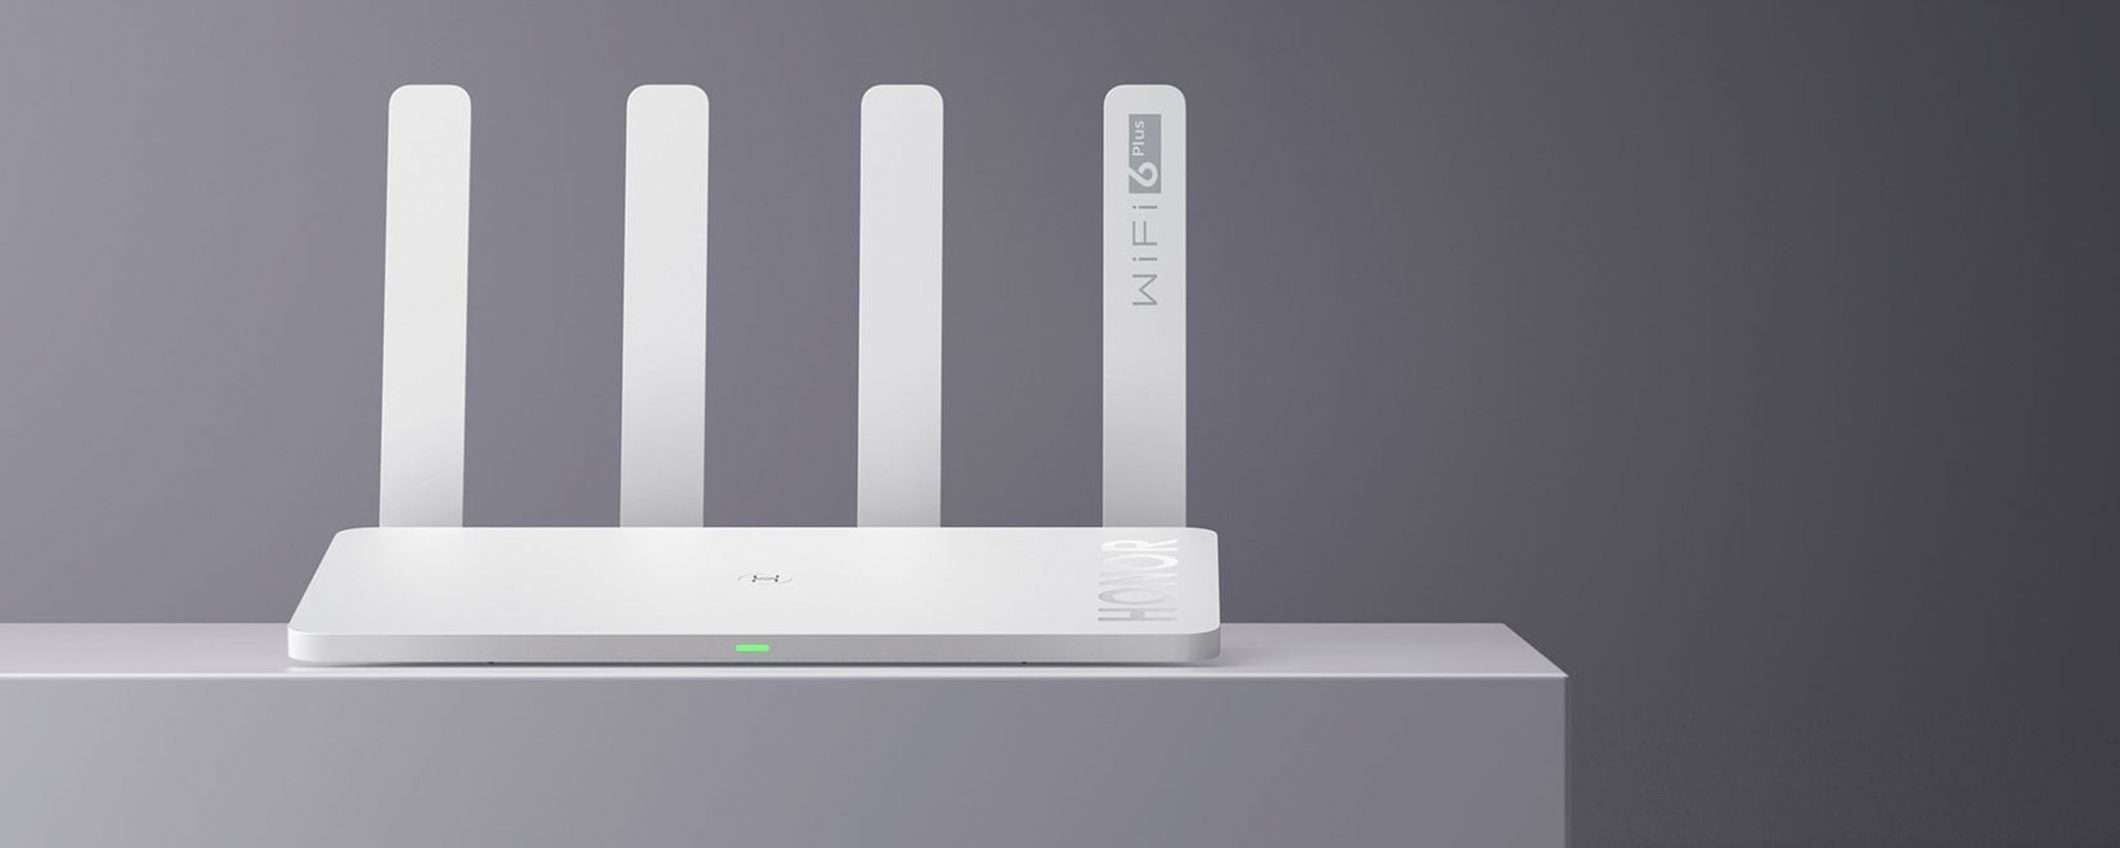 Honor Router 3 Wi-Fi 6: prezzo minimo storico su Amazon (44€)